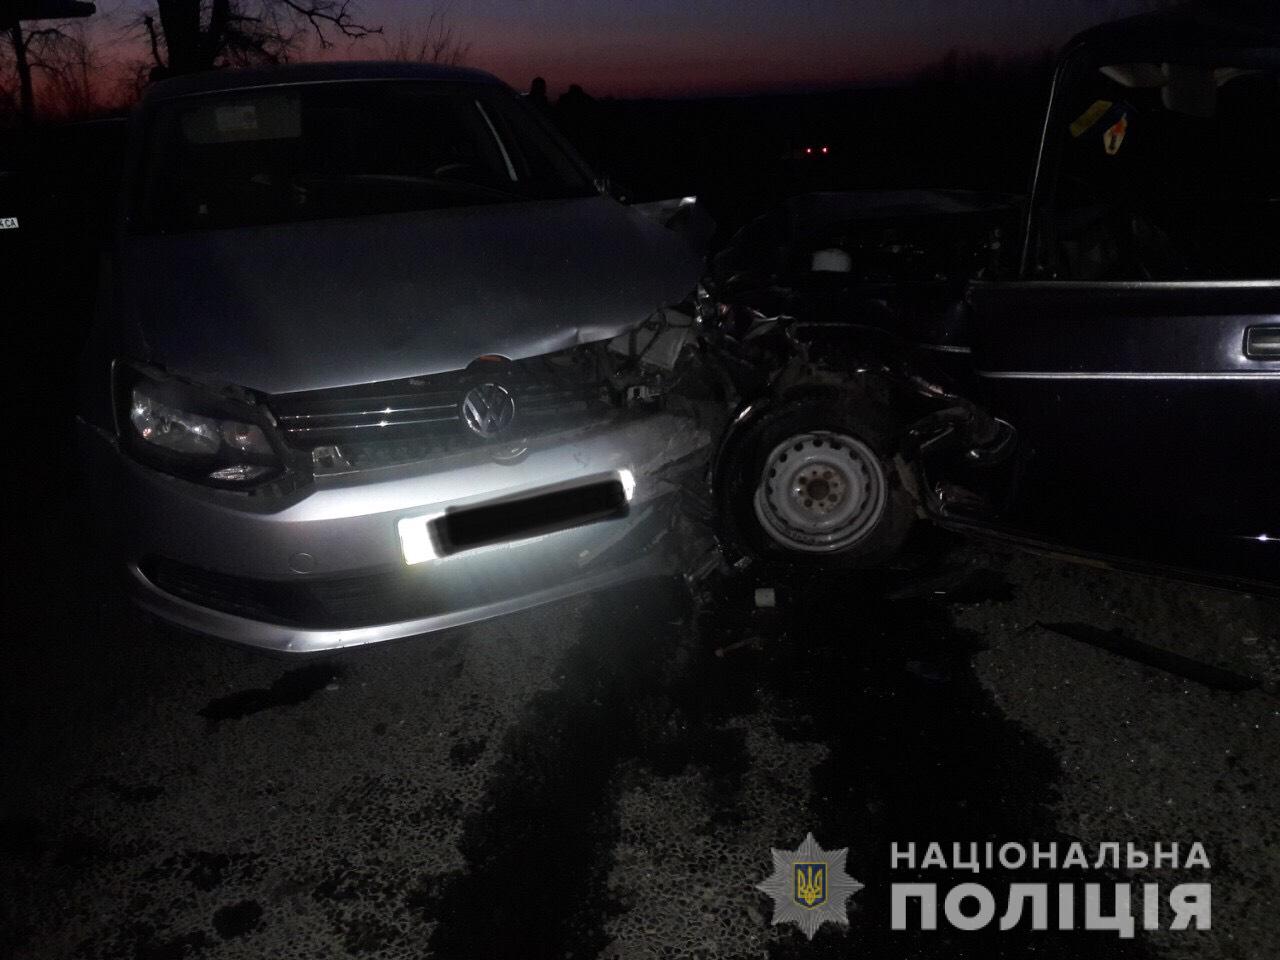 Постраждали діти: на Мукачівщині чоловік на підпитку вкрав авто, та протаранив «Volkswagen»